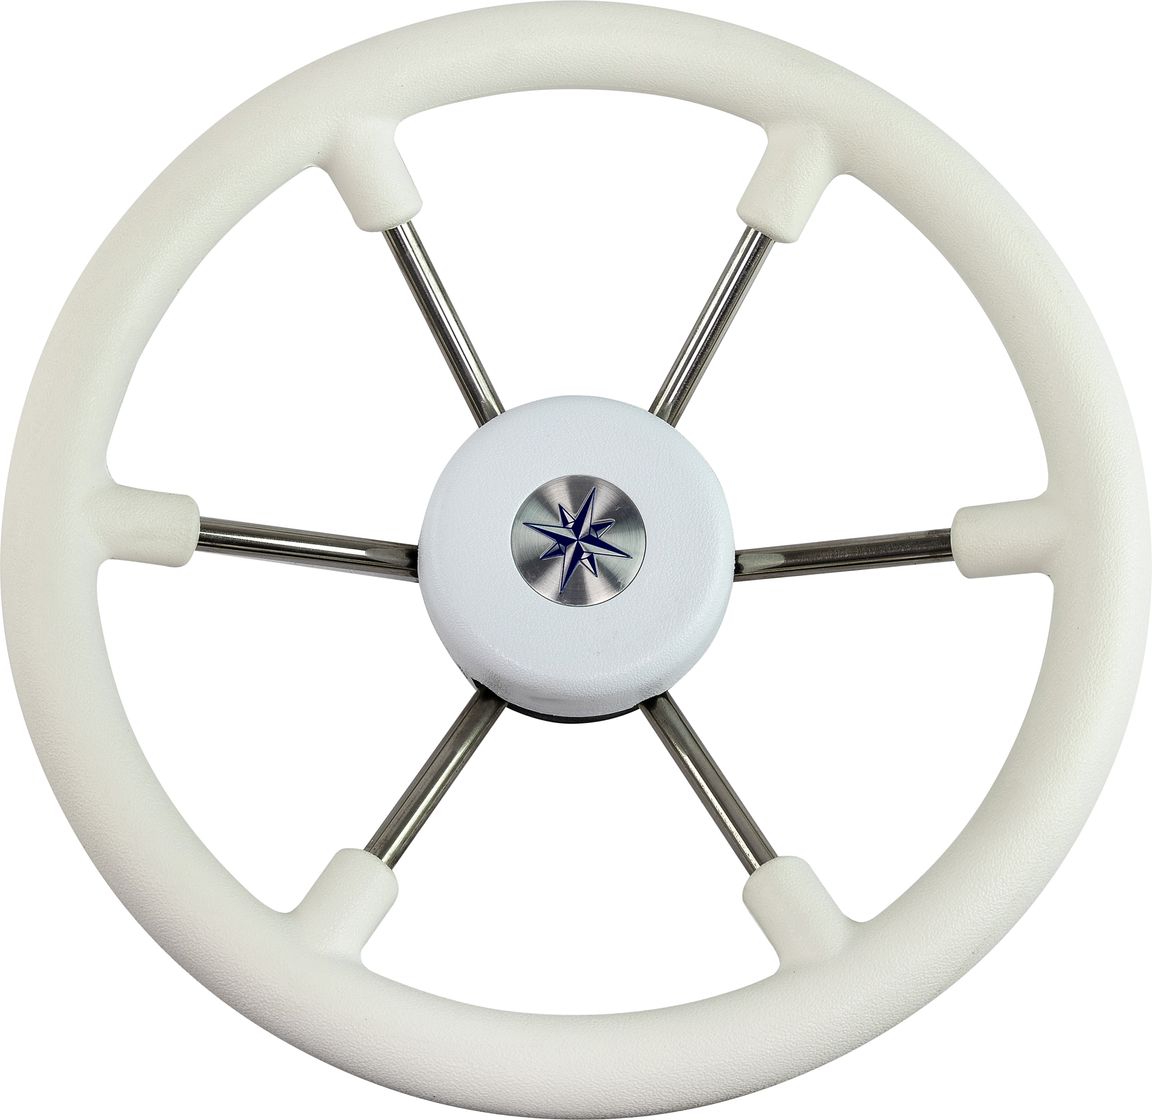 Рулевое колесо LEADER TANEGUM белый обод серебряные спицы д. 330 мм VN7330-08 рулевое колесо matrix белый обод more 10016474